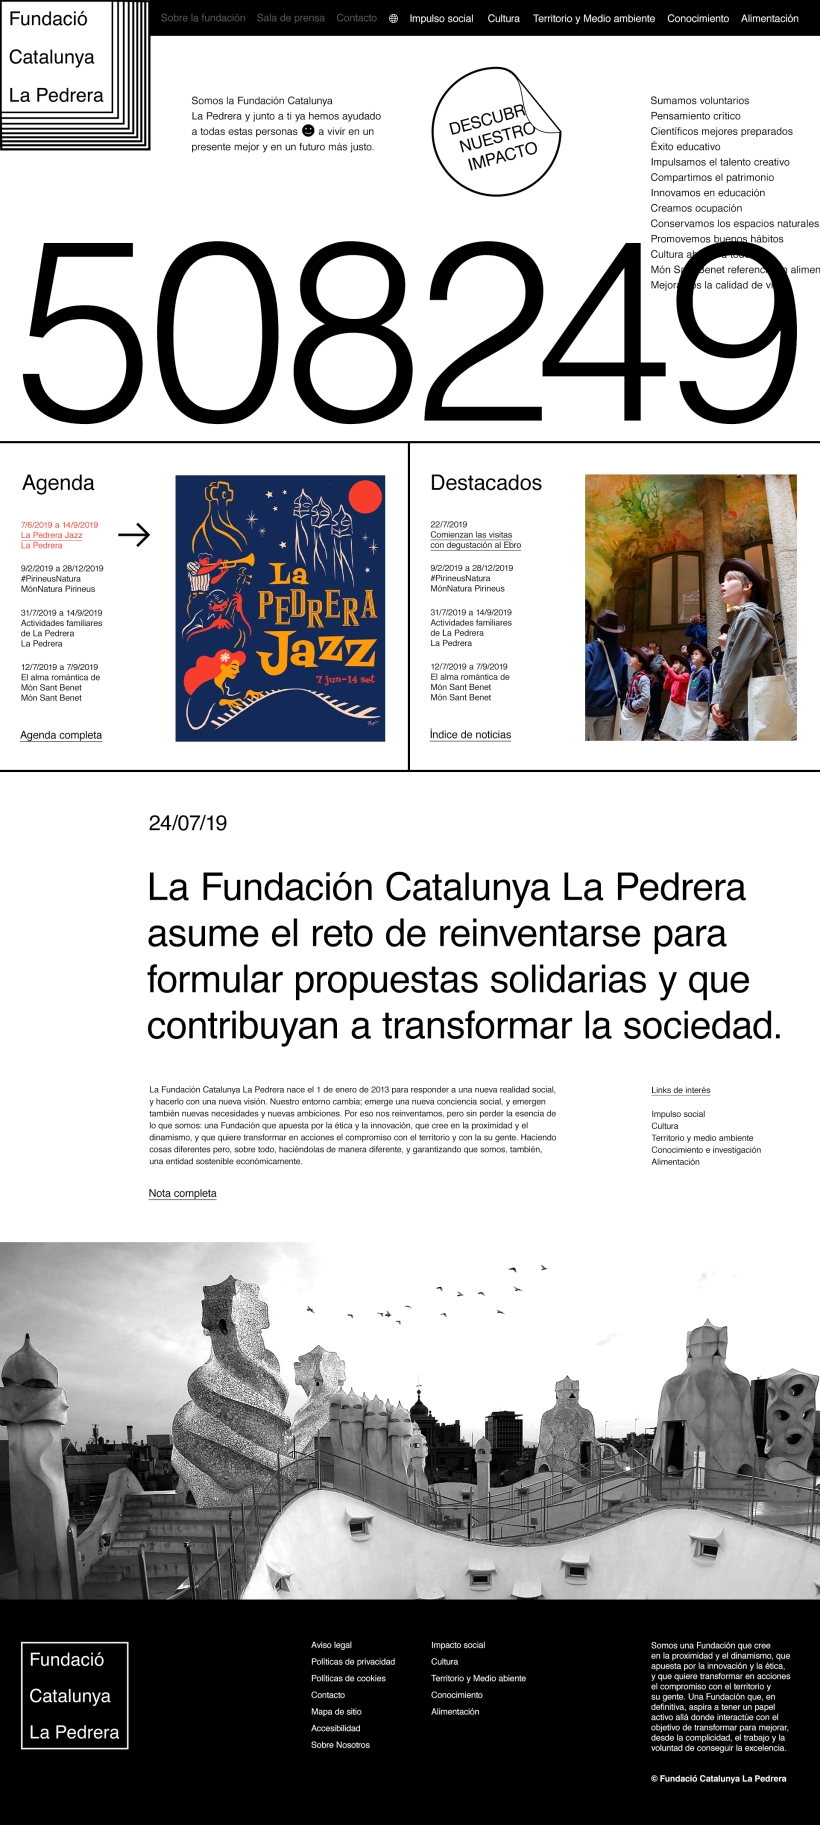 New digital portal for "Fundació Catalunya La Pedrera" 0